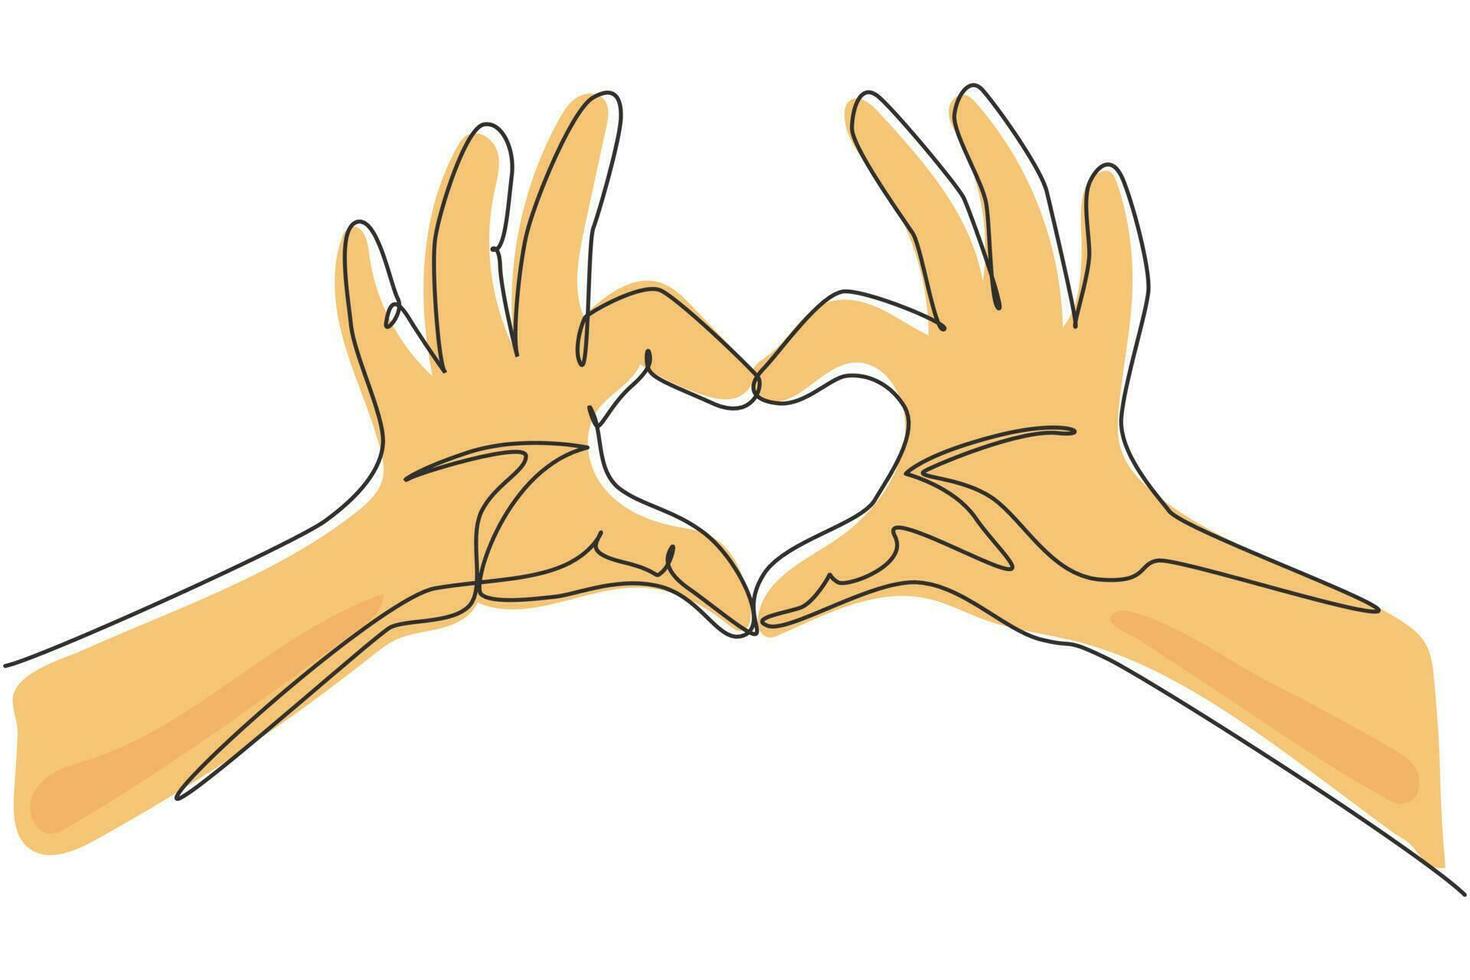 Manos de dibujo de una sola línea que hacen el signo o símbolo del corazón con los dedos. hermosas manos con espacio de copia. concepto de amor con gestos con las manos. Ilustración de vector gráfico de diseño de dibujo de línea continua moderna